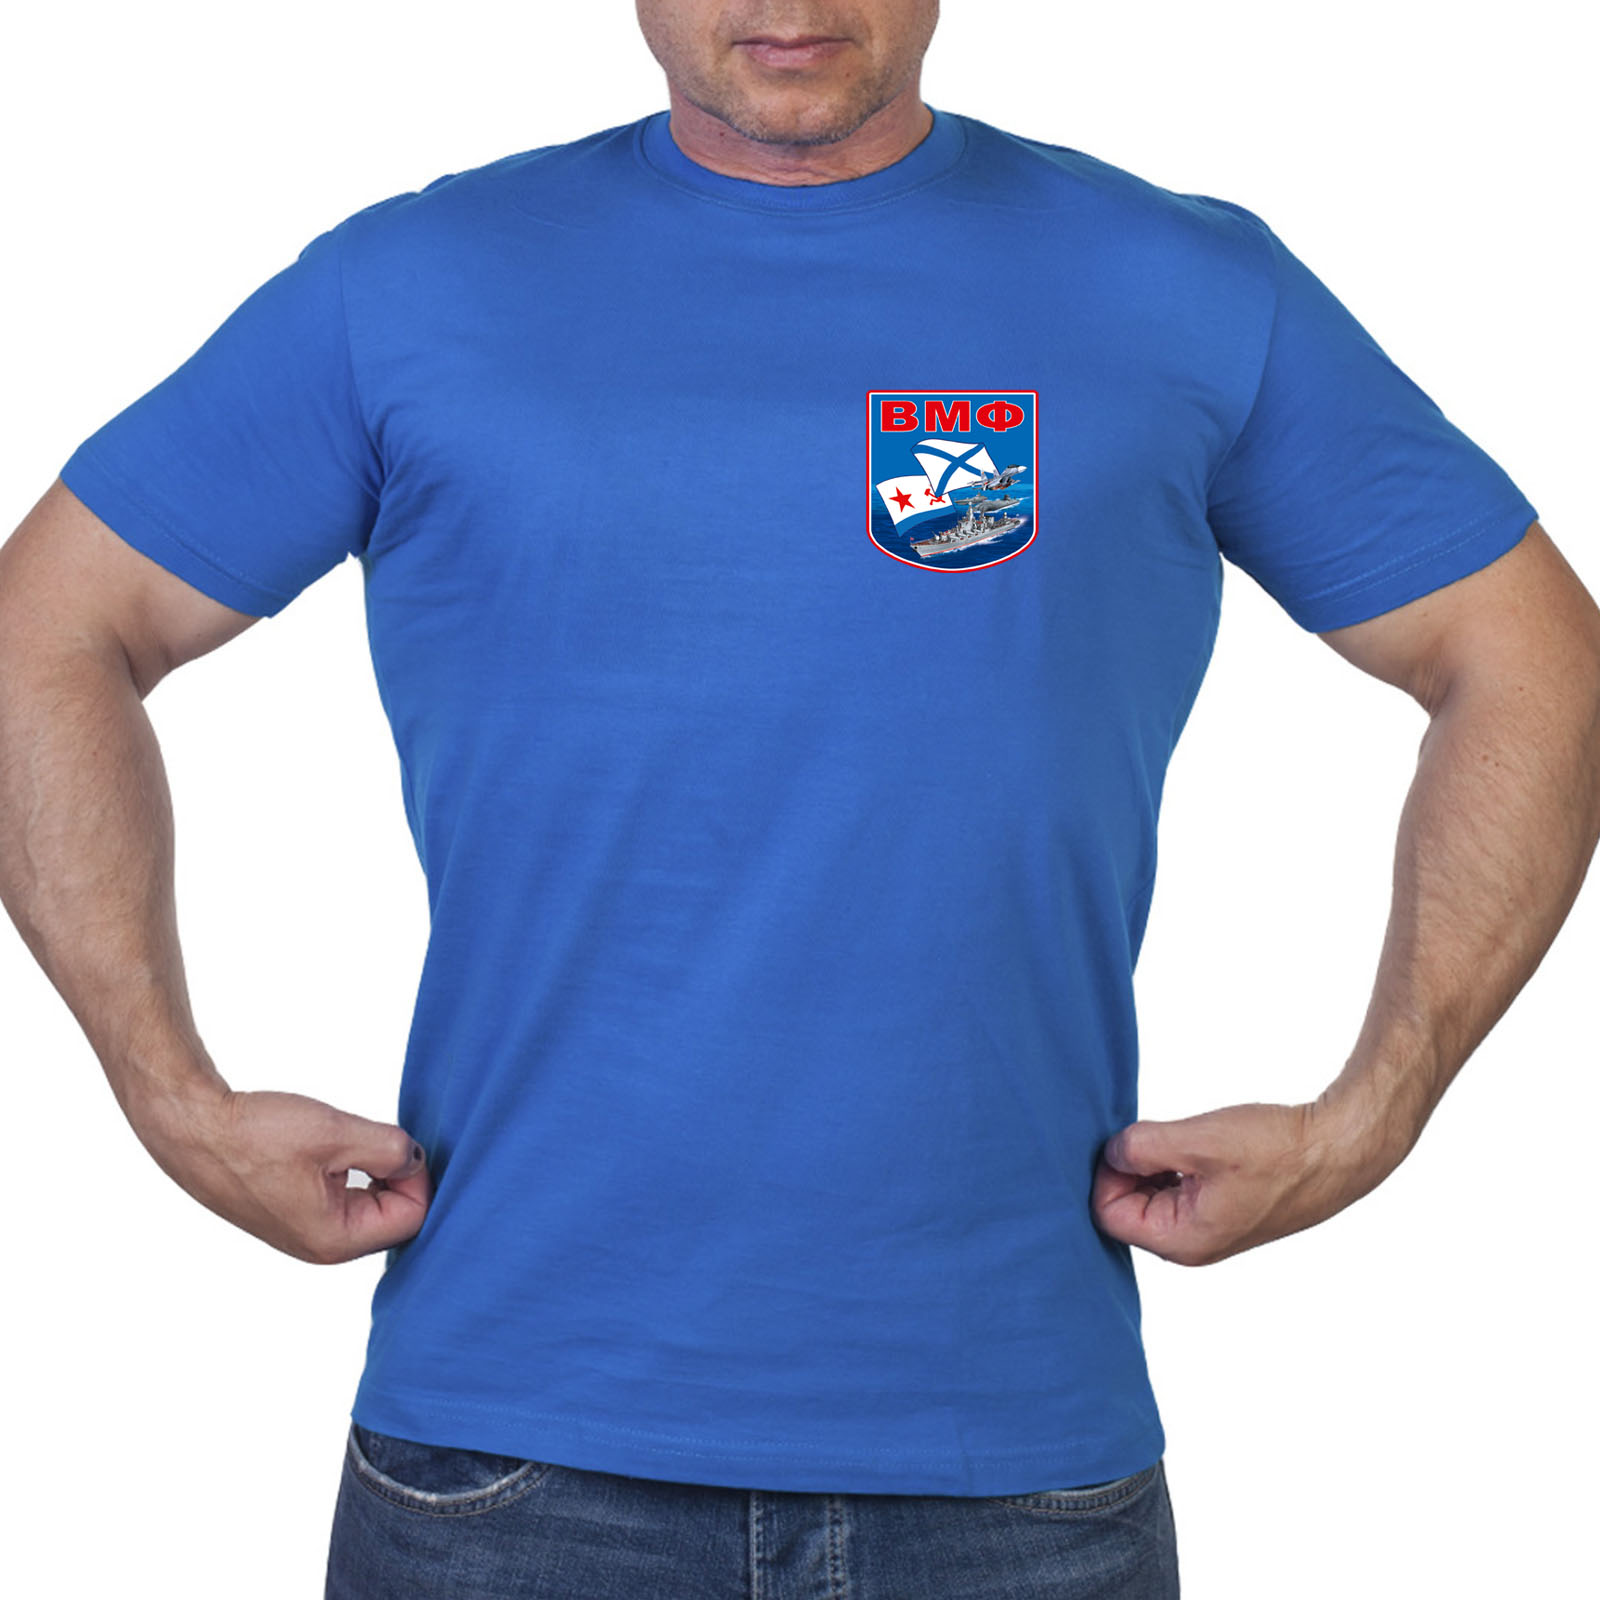 Васильковая футболка с термотрансфером "ВМФ"